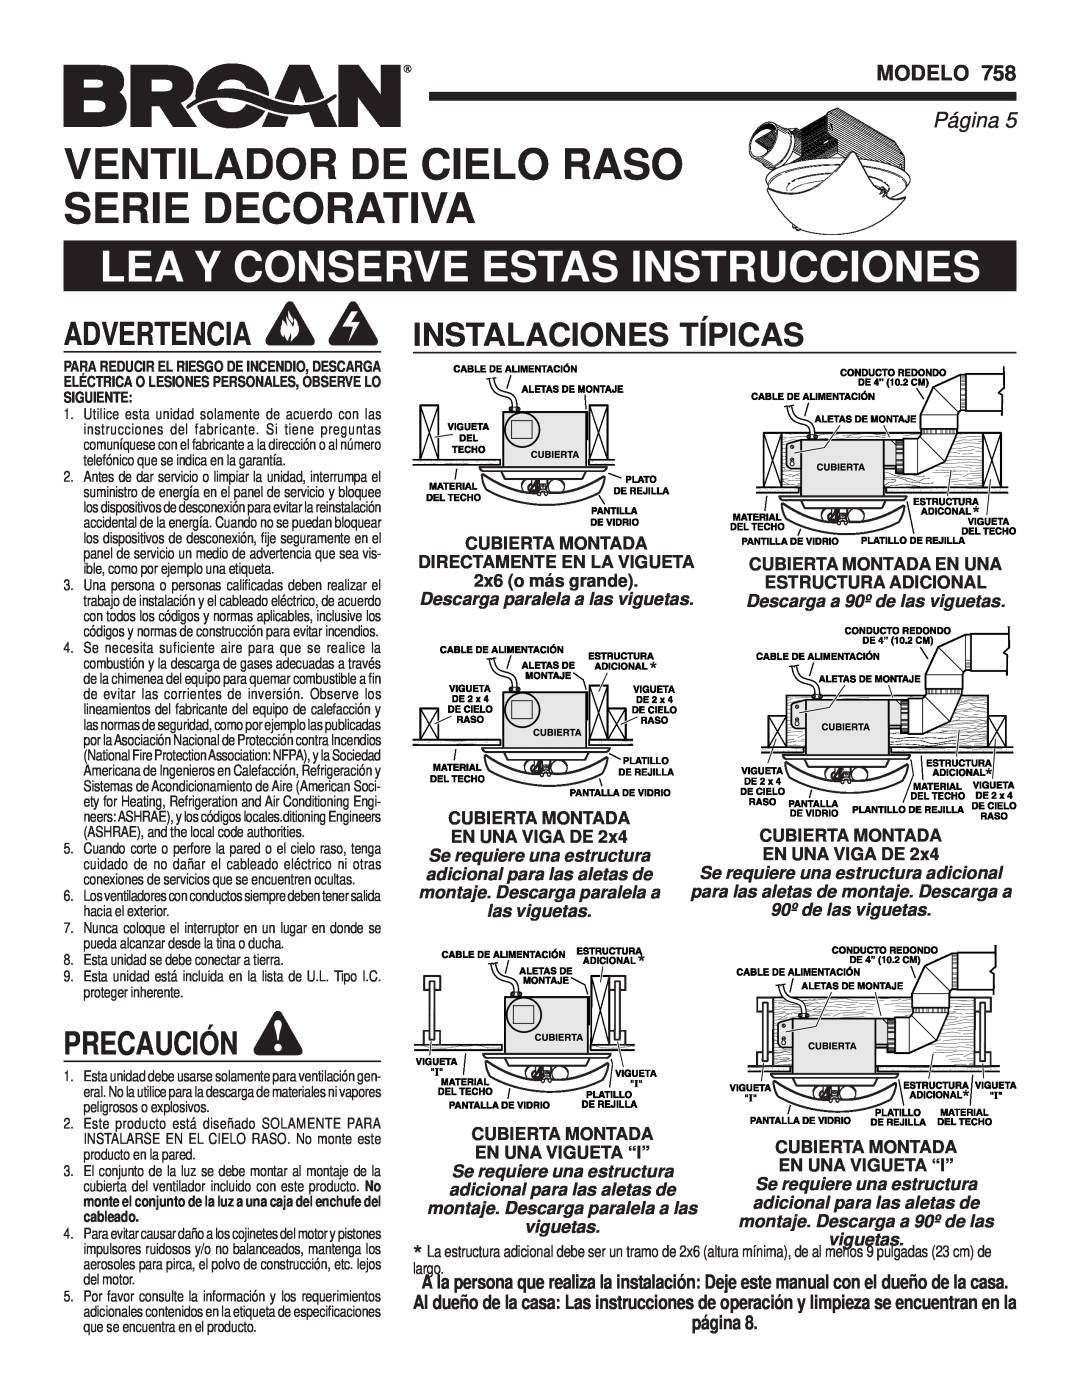 Broan 758 Ventilador De Cielo Raso Serie Decorativa, Instalaciones, Precaución, Modelo, Página, página, Cubierta Montada 